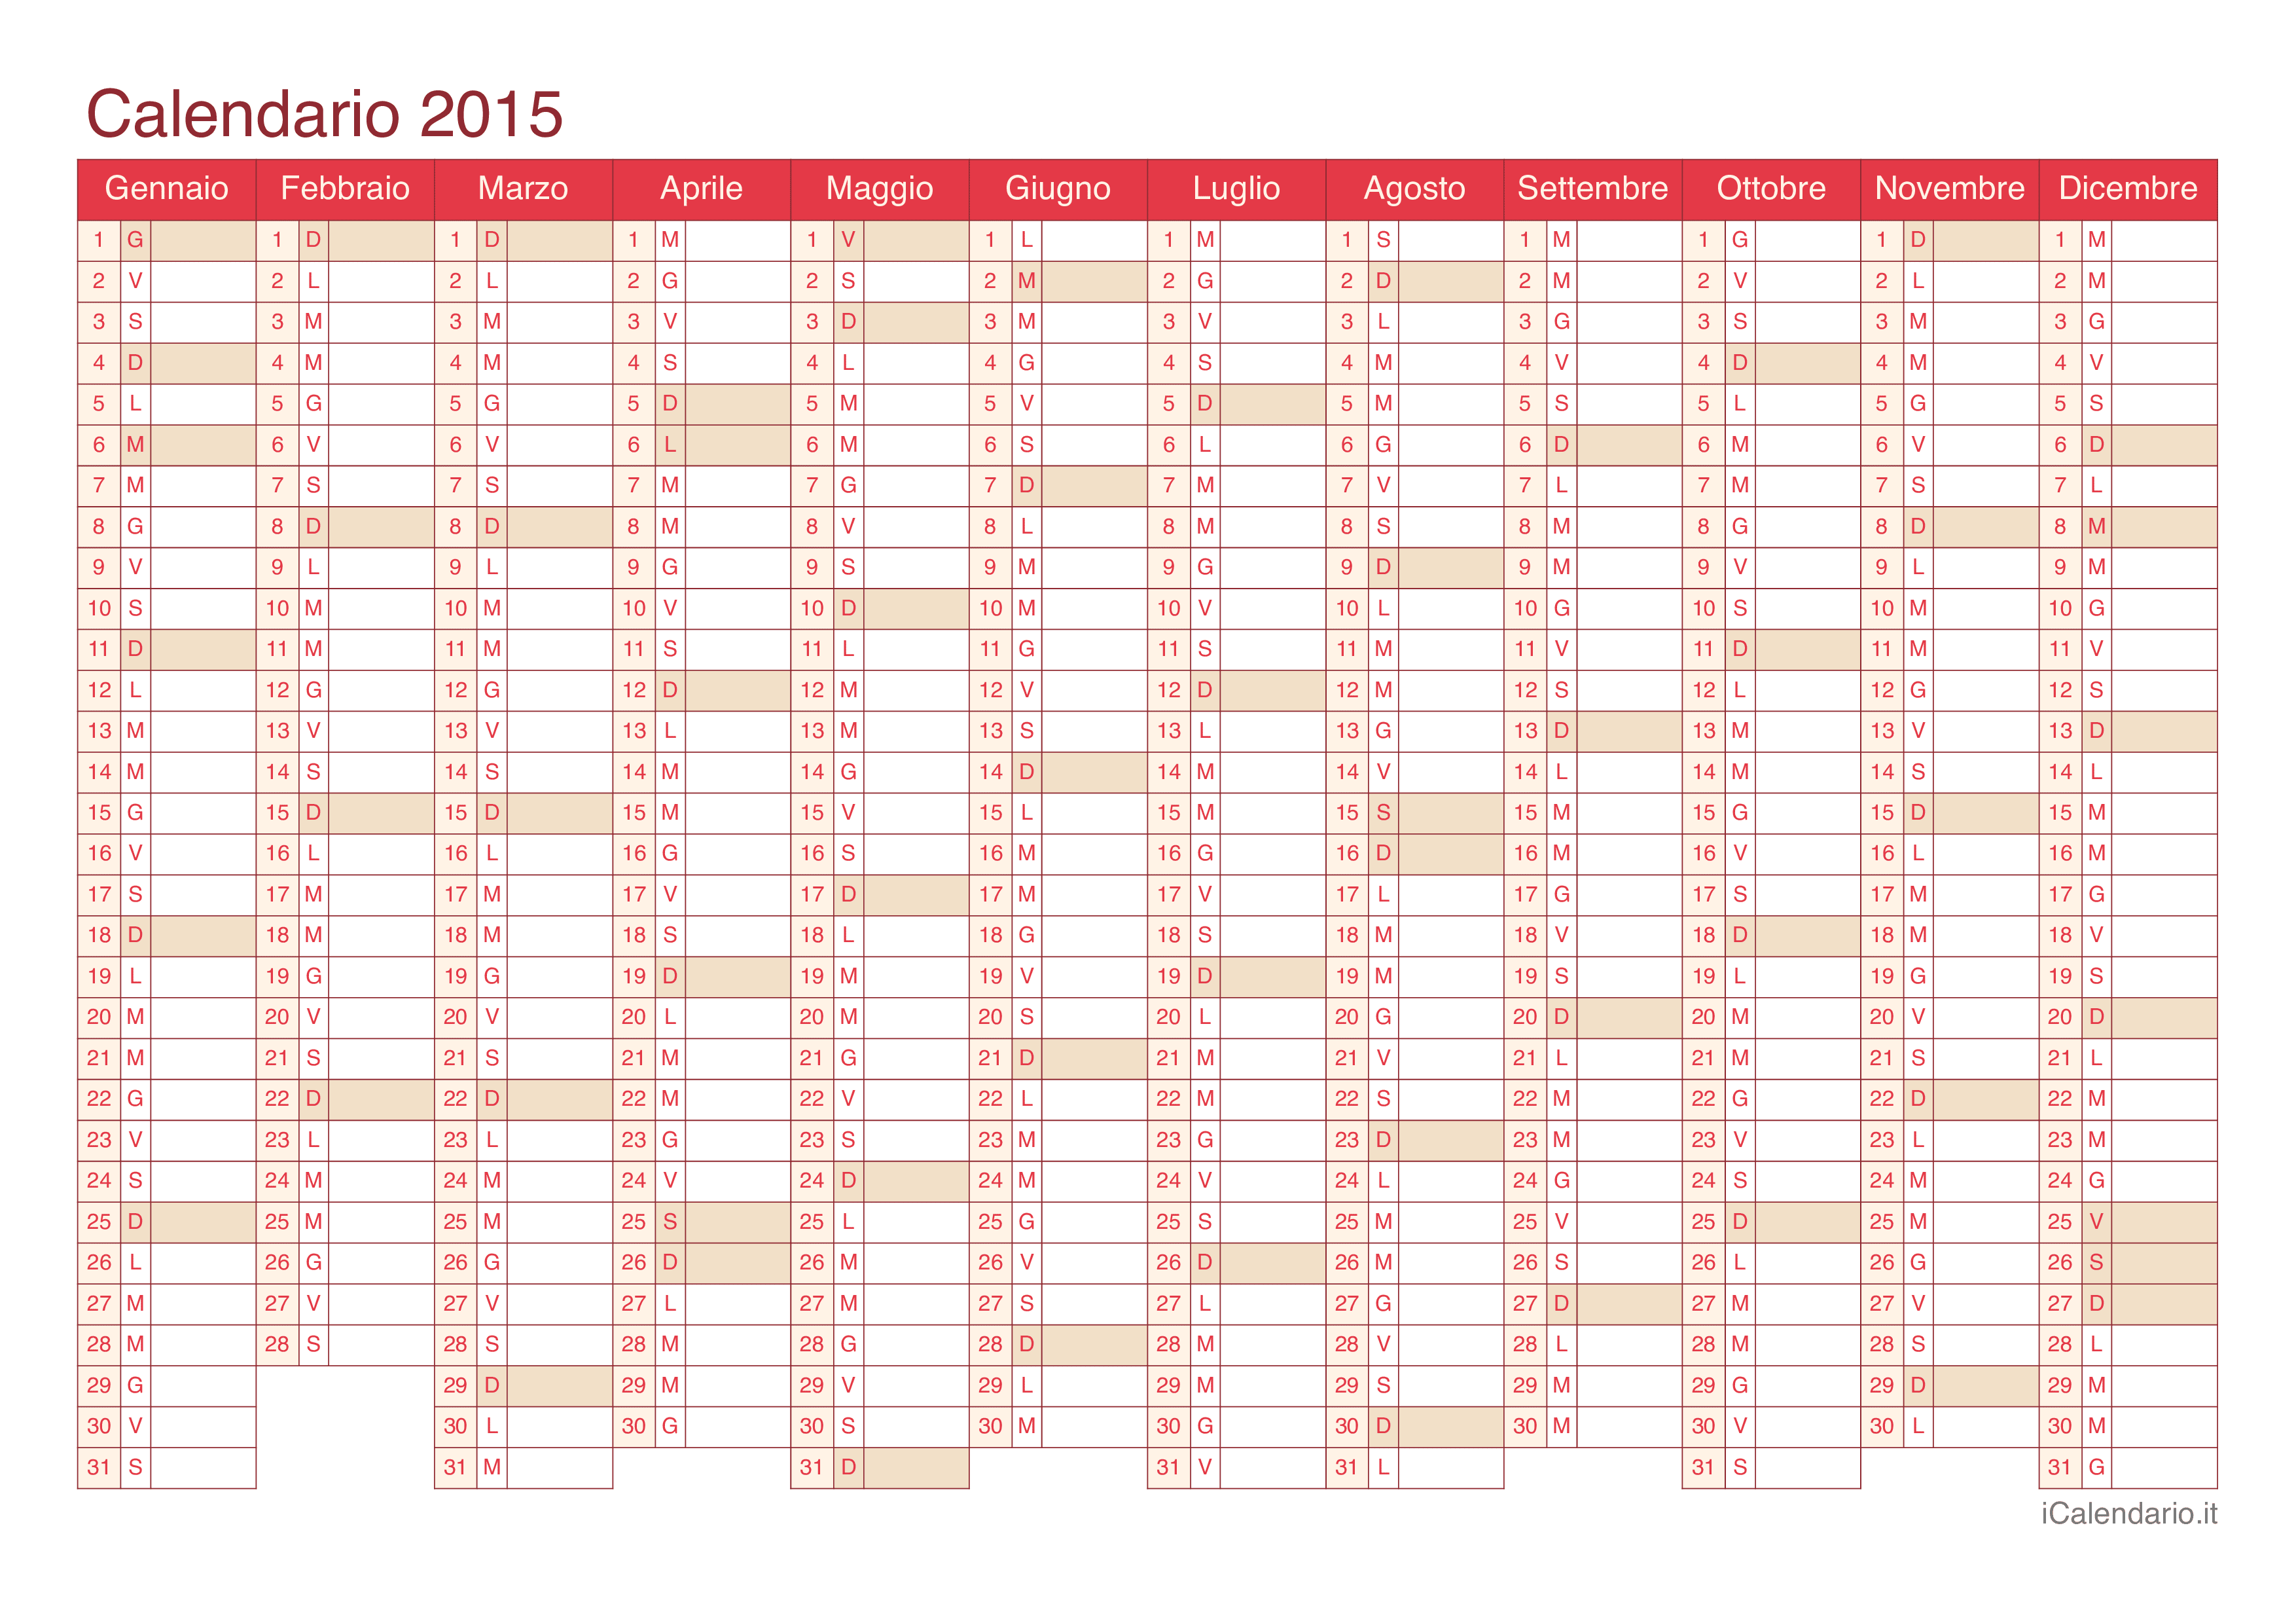 Calendario 2015 - Cherry